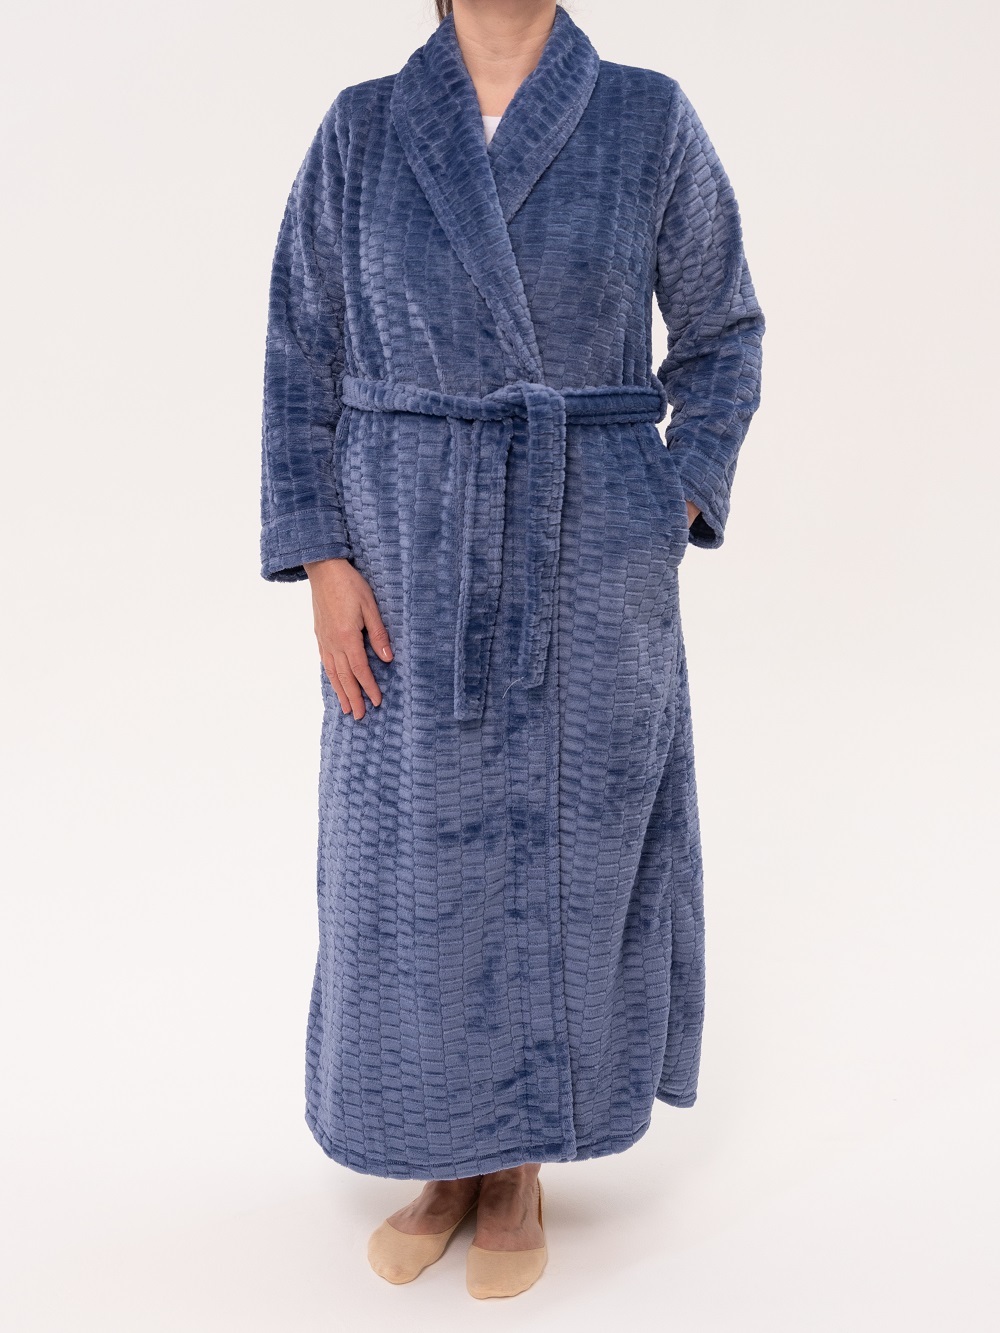 Women's Zip Up Plush Fleece Robe Hooded Warm Long Bathrobe Dressing Gown  Winter Cozy Zipper Lounger Sleepwear Housecoat Loungewear Nightgown |  Fruugo TR